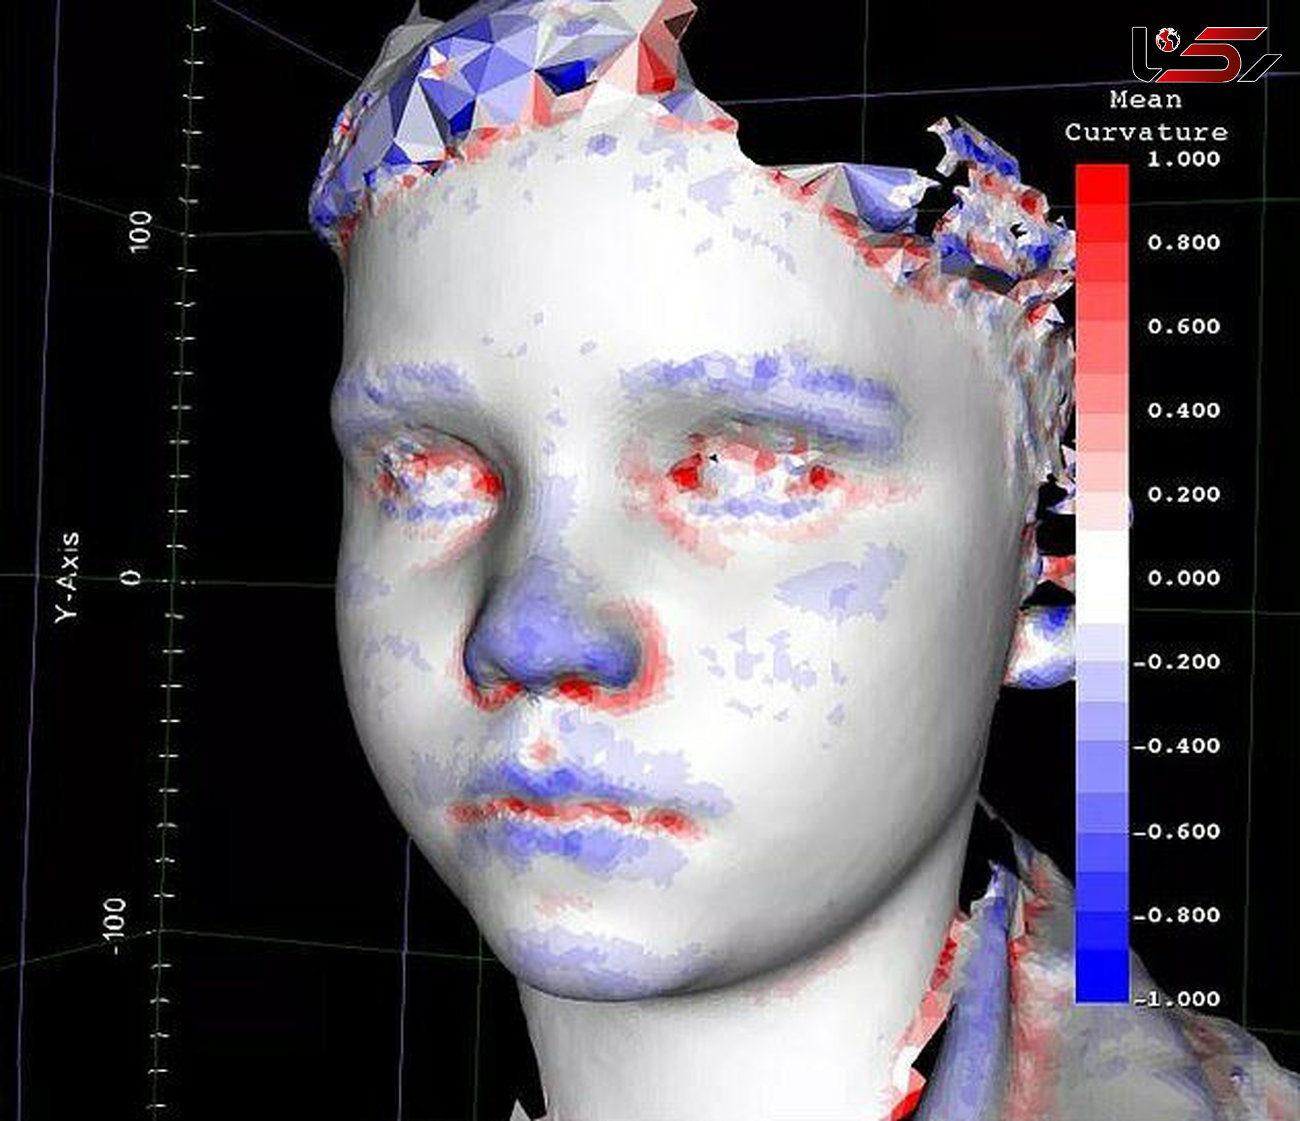 نرم افزار تشخیص چهره در رصد بیماری های نادر کودکان